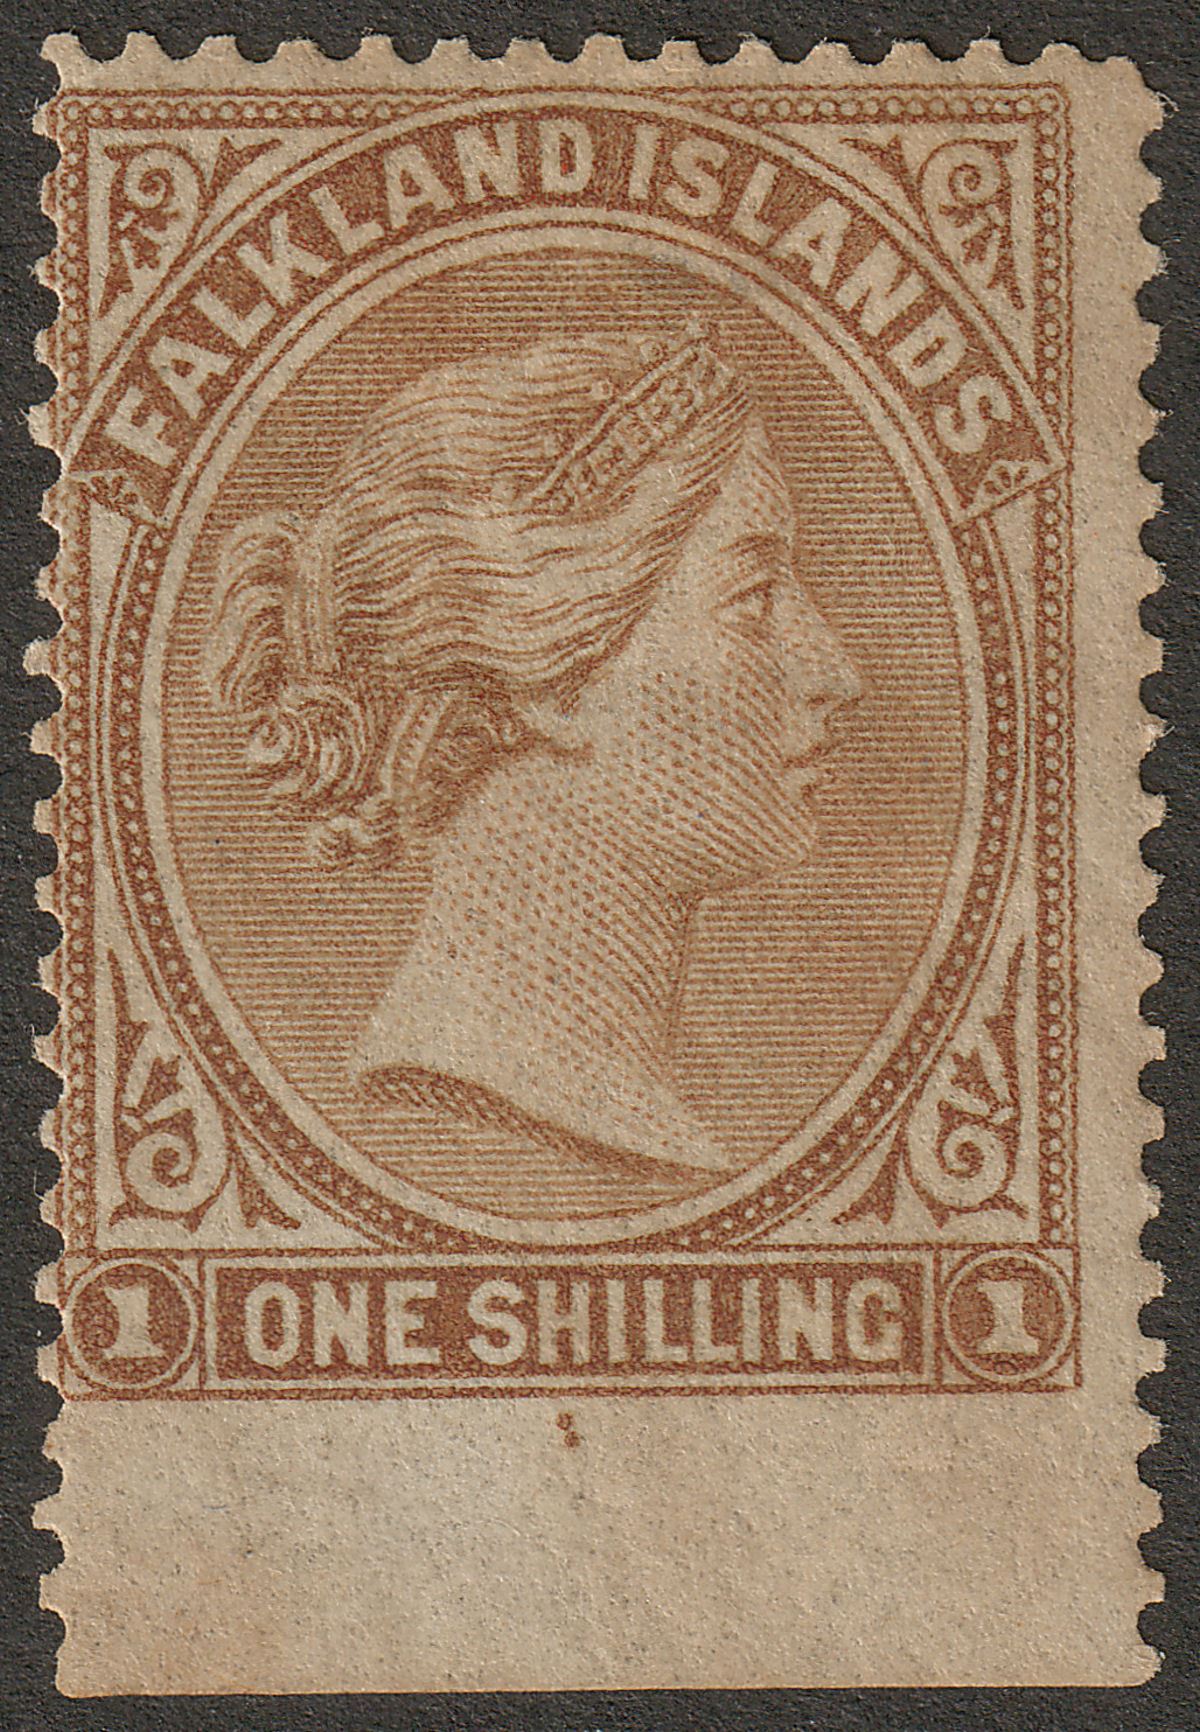 Falkland Islands 1878 QV 1sh Bistre-Brown Mint SG4 cat £85